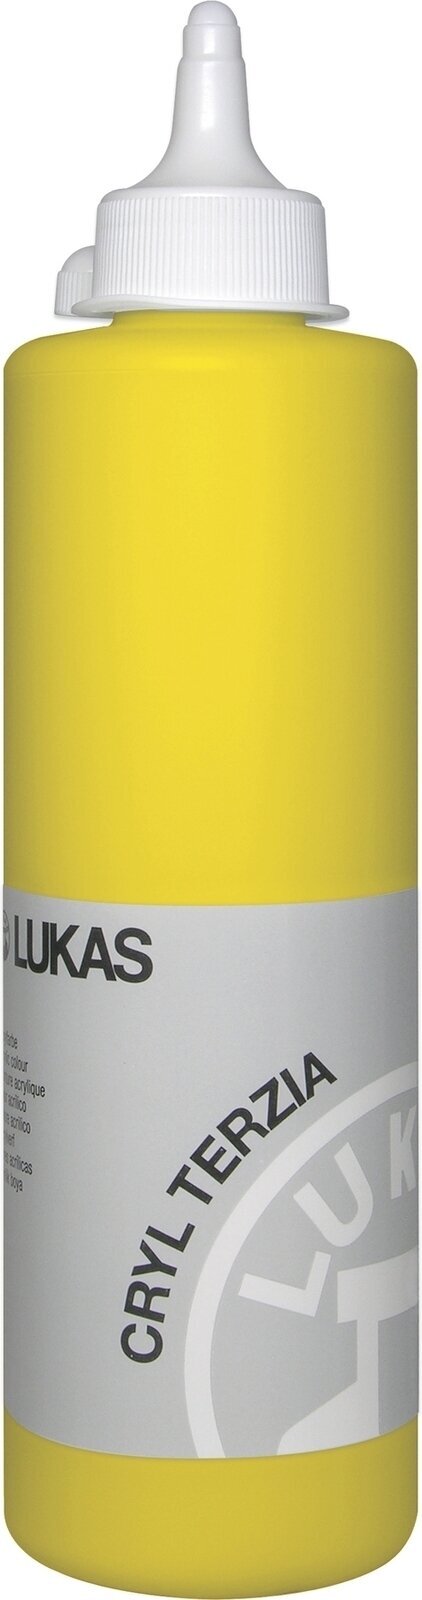 Akrylfärg Lukas Cryl Terzia Akrylfärg 500 ml Primary Yellow